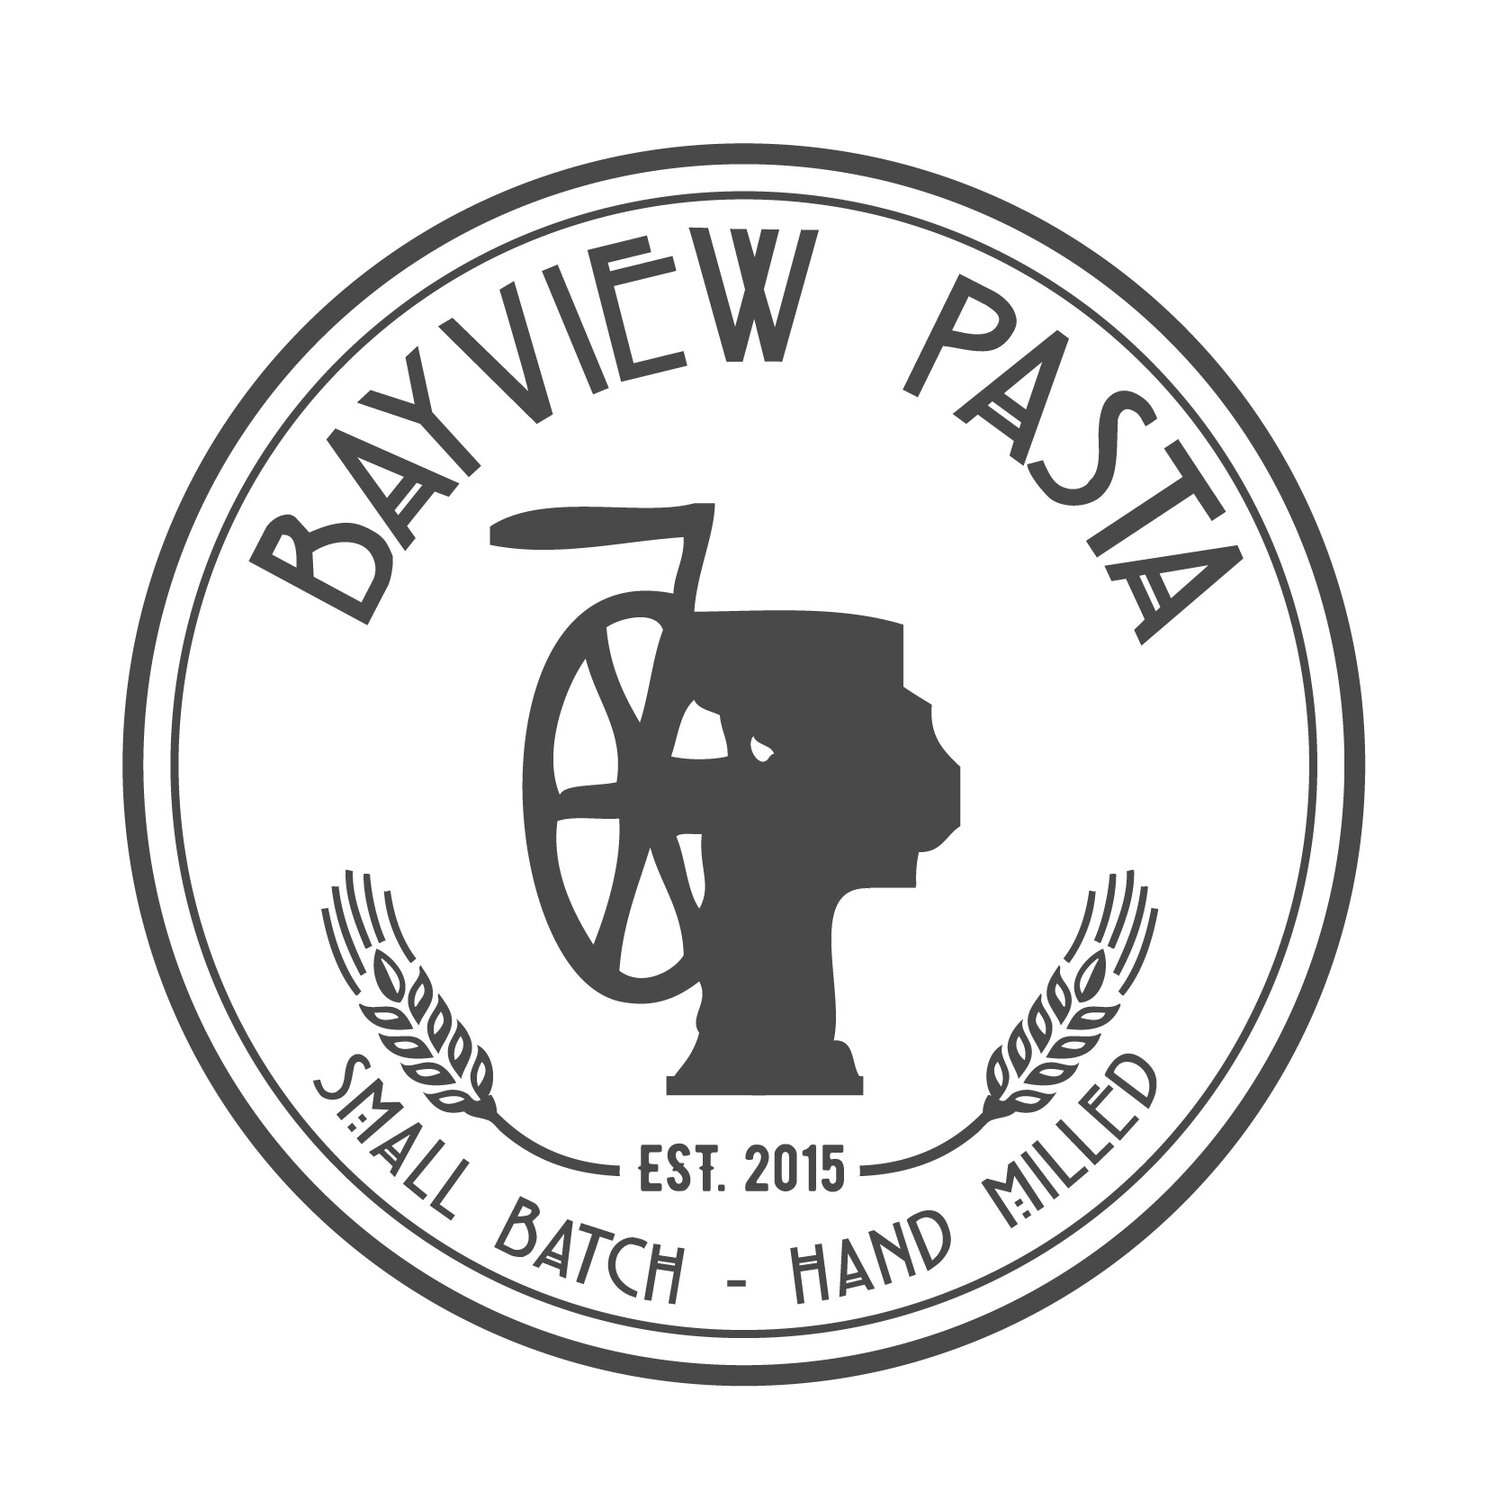 Bayview Pasta